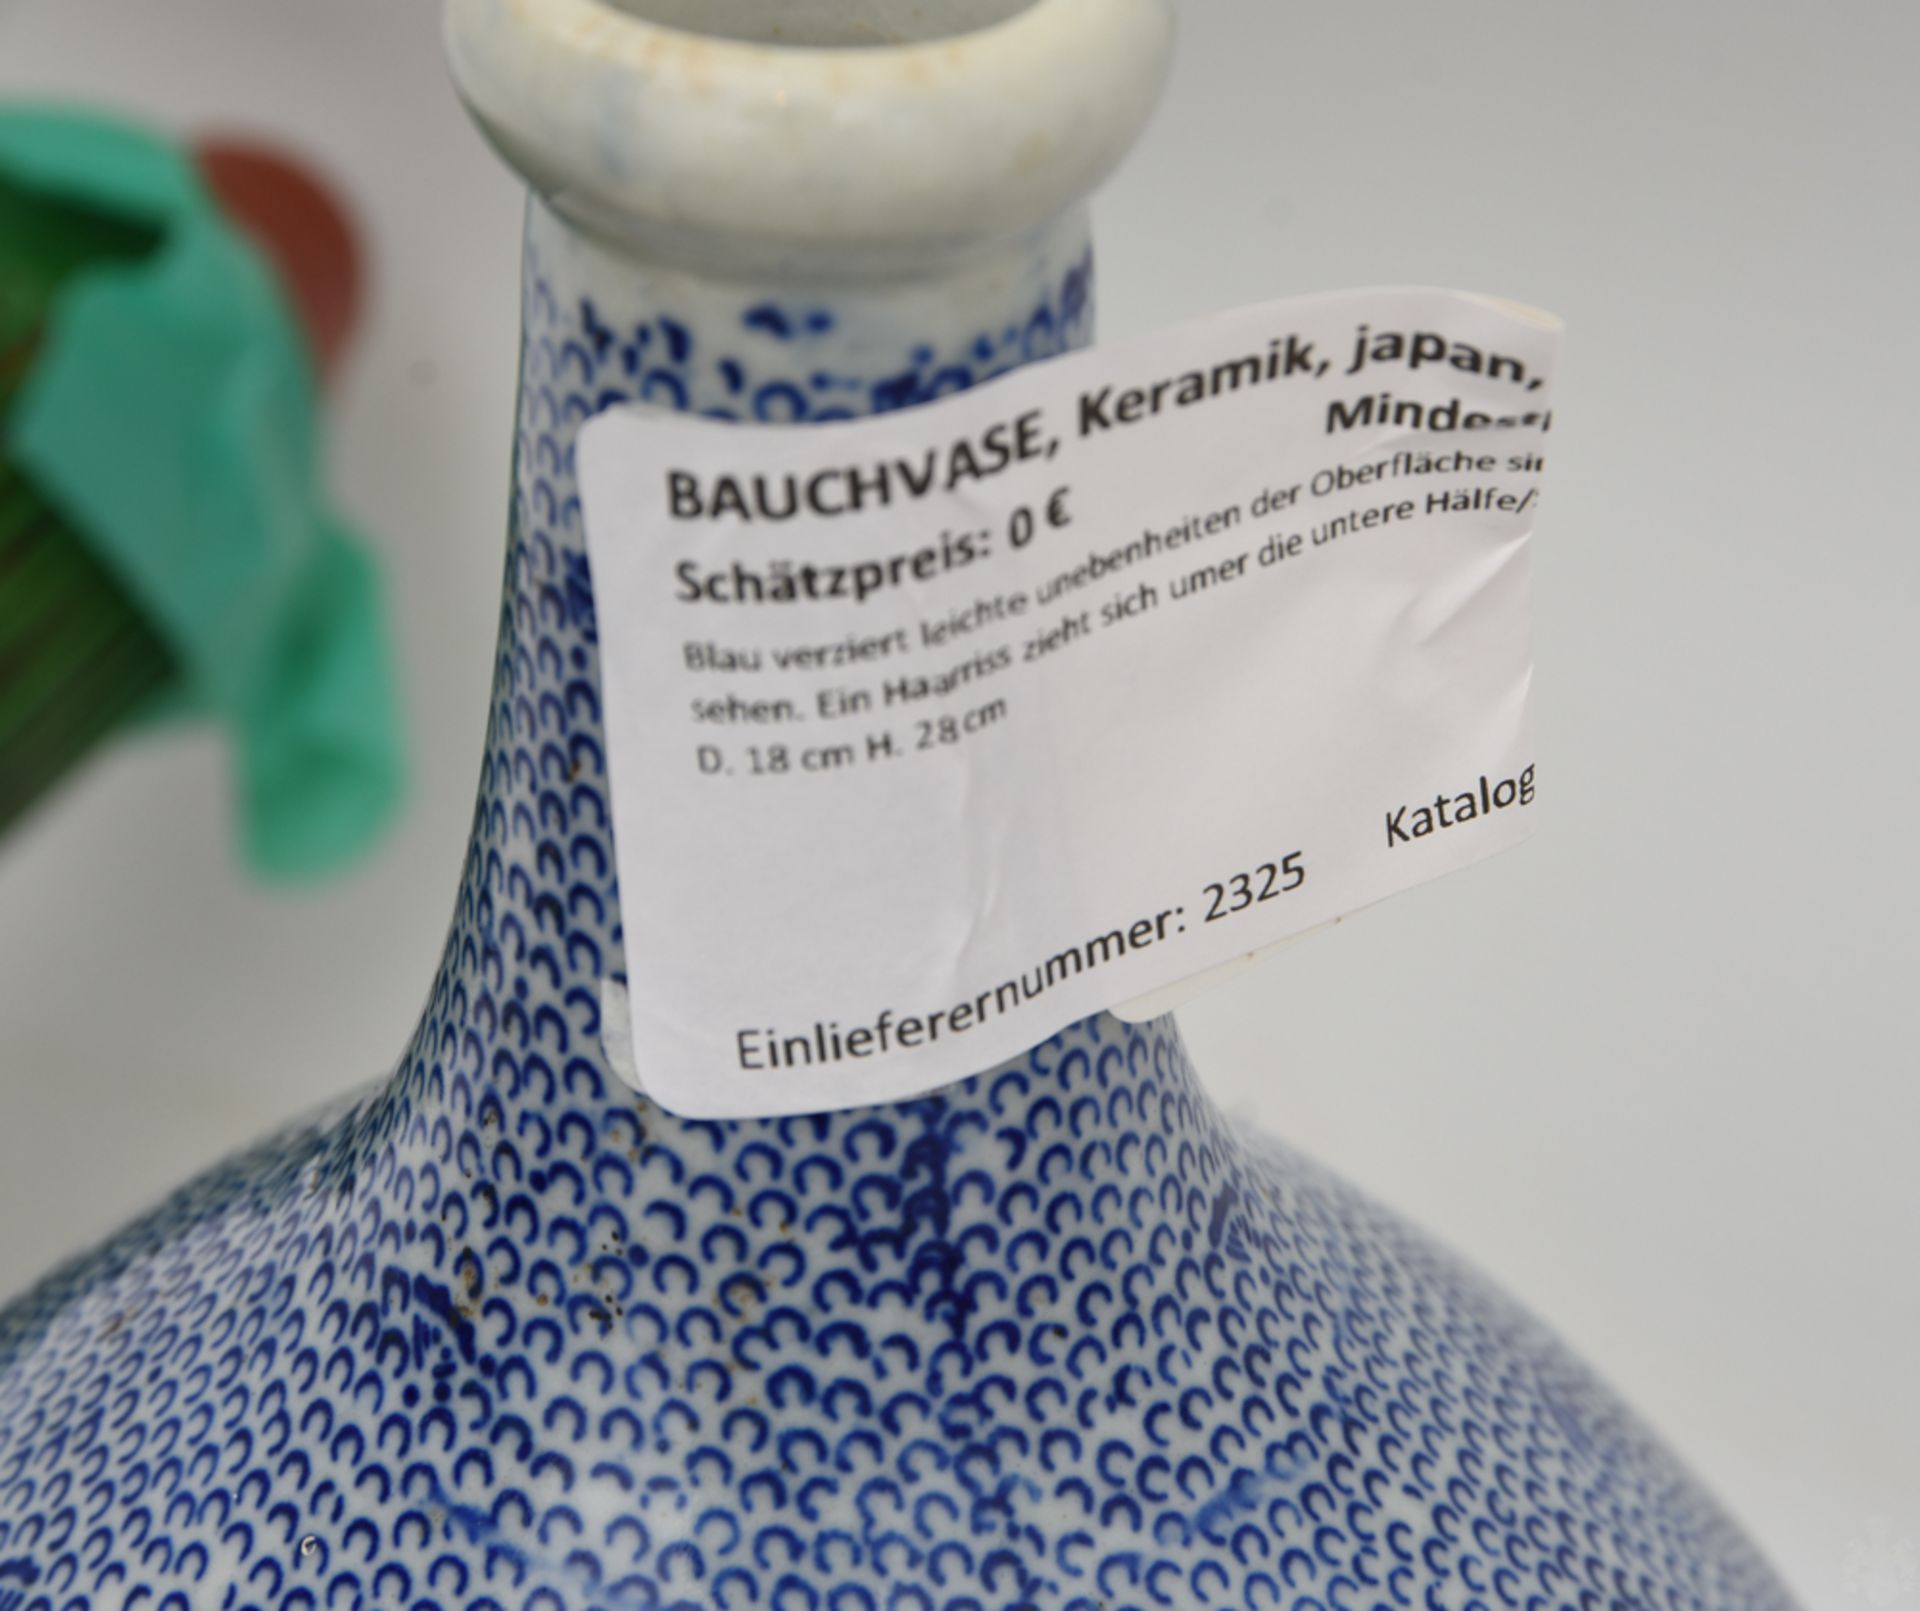 BAUCHVASE, Keramik, Japan, 20. Jh.Blau verziert leichte unebenheiten der Oberfläche sind spürbar - Bild 4 aus 4